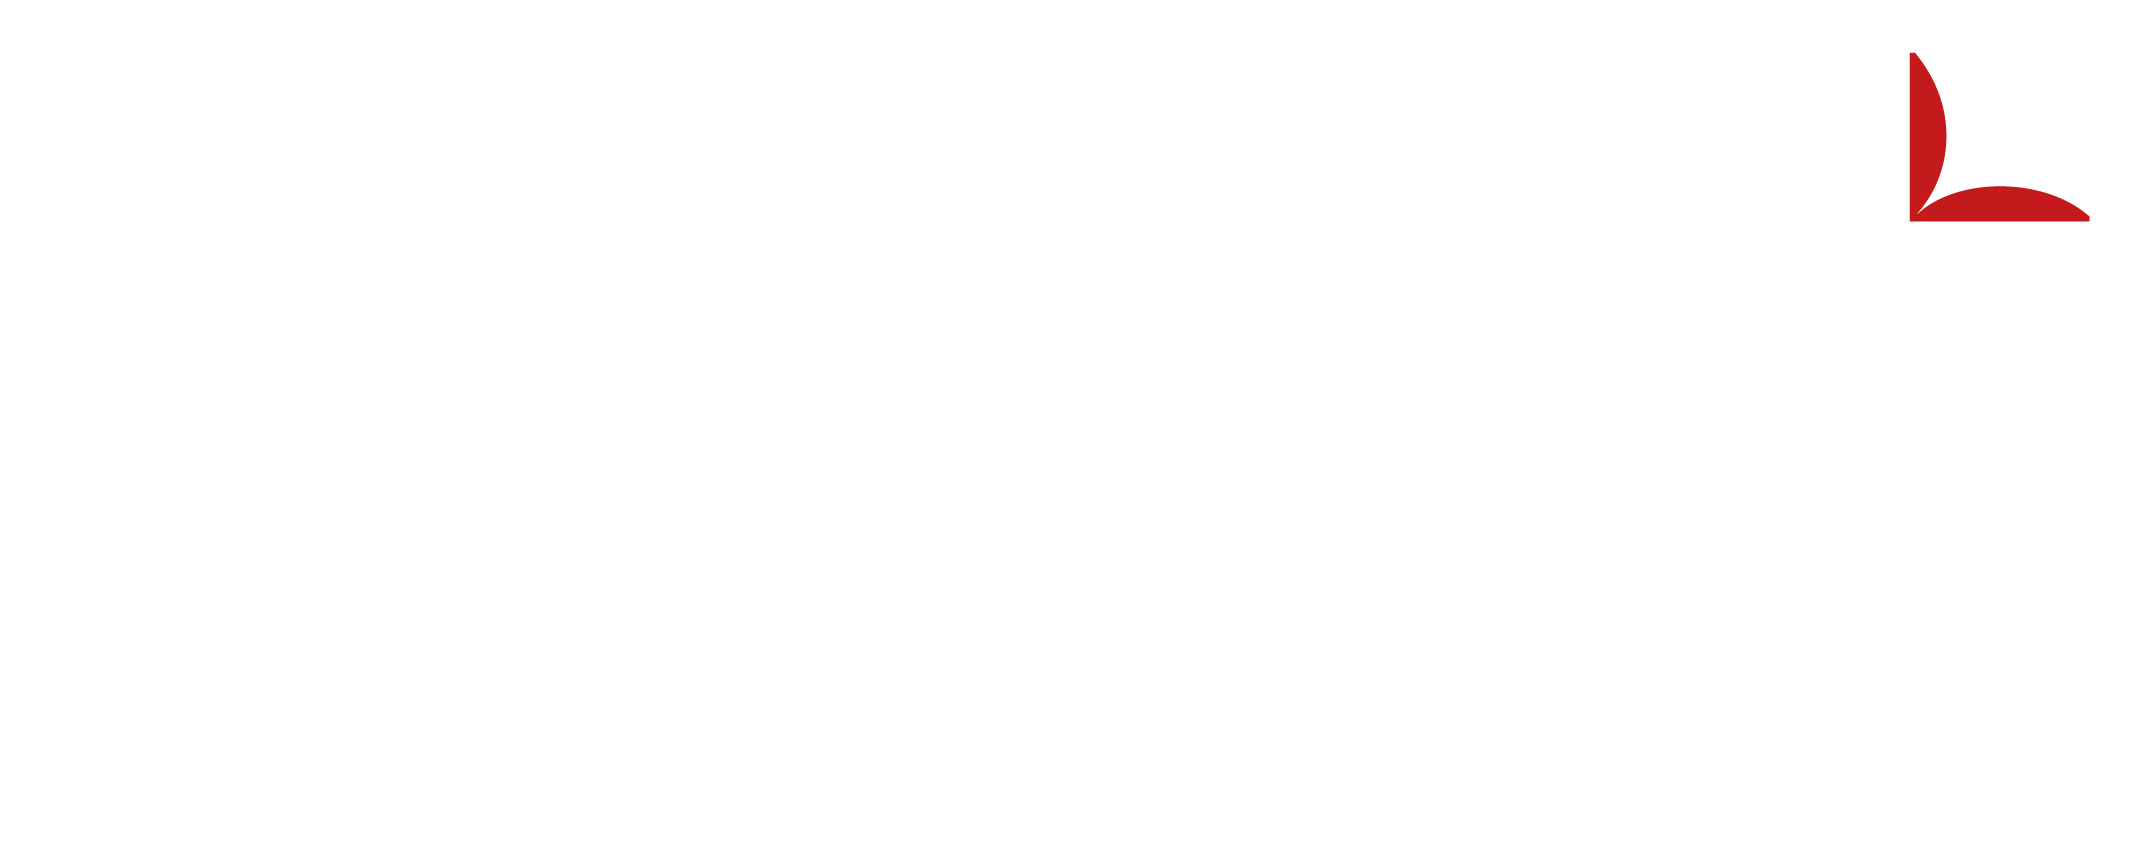 Edelman Logo - Gerald Edelman